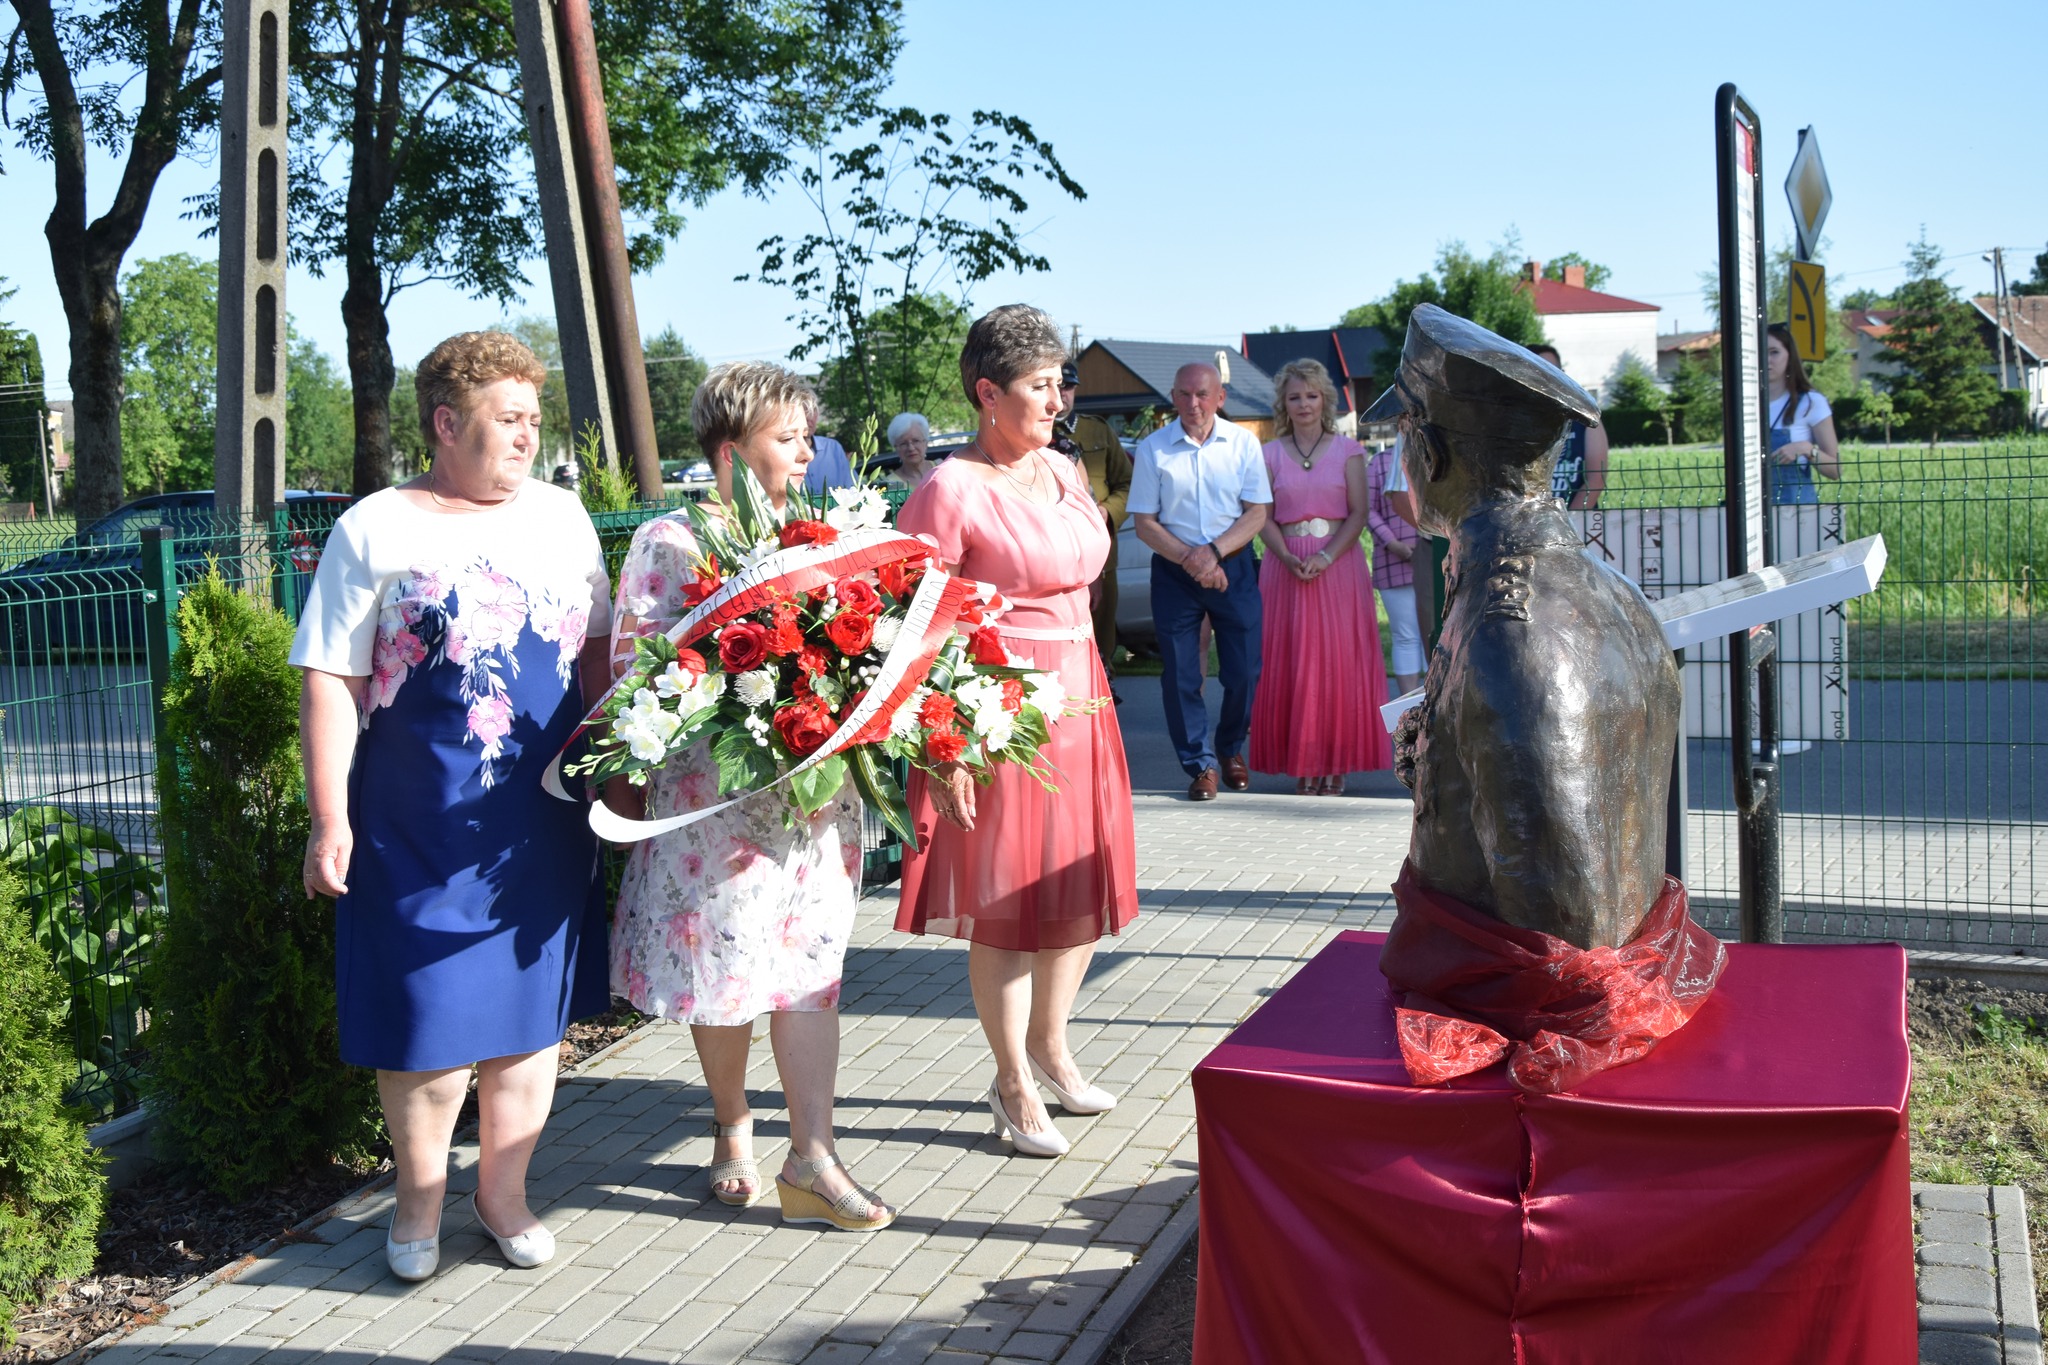 zdjęcie przedstawia członkinie Stowarzyszenia Miechowice Małe, które składają kwiaty przy tablicy pamiątkowej i pomniku Płk. Władysława Kabata.